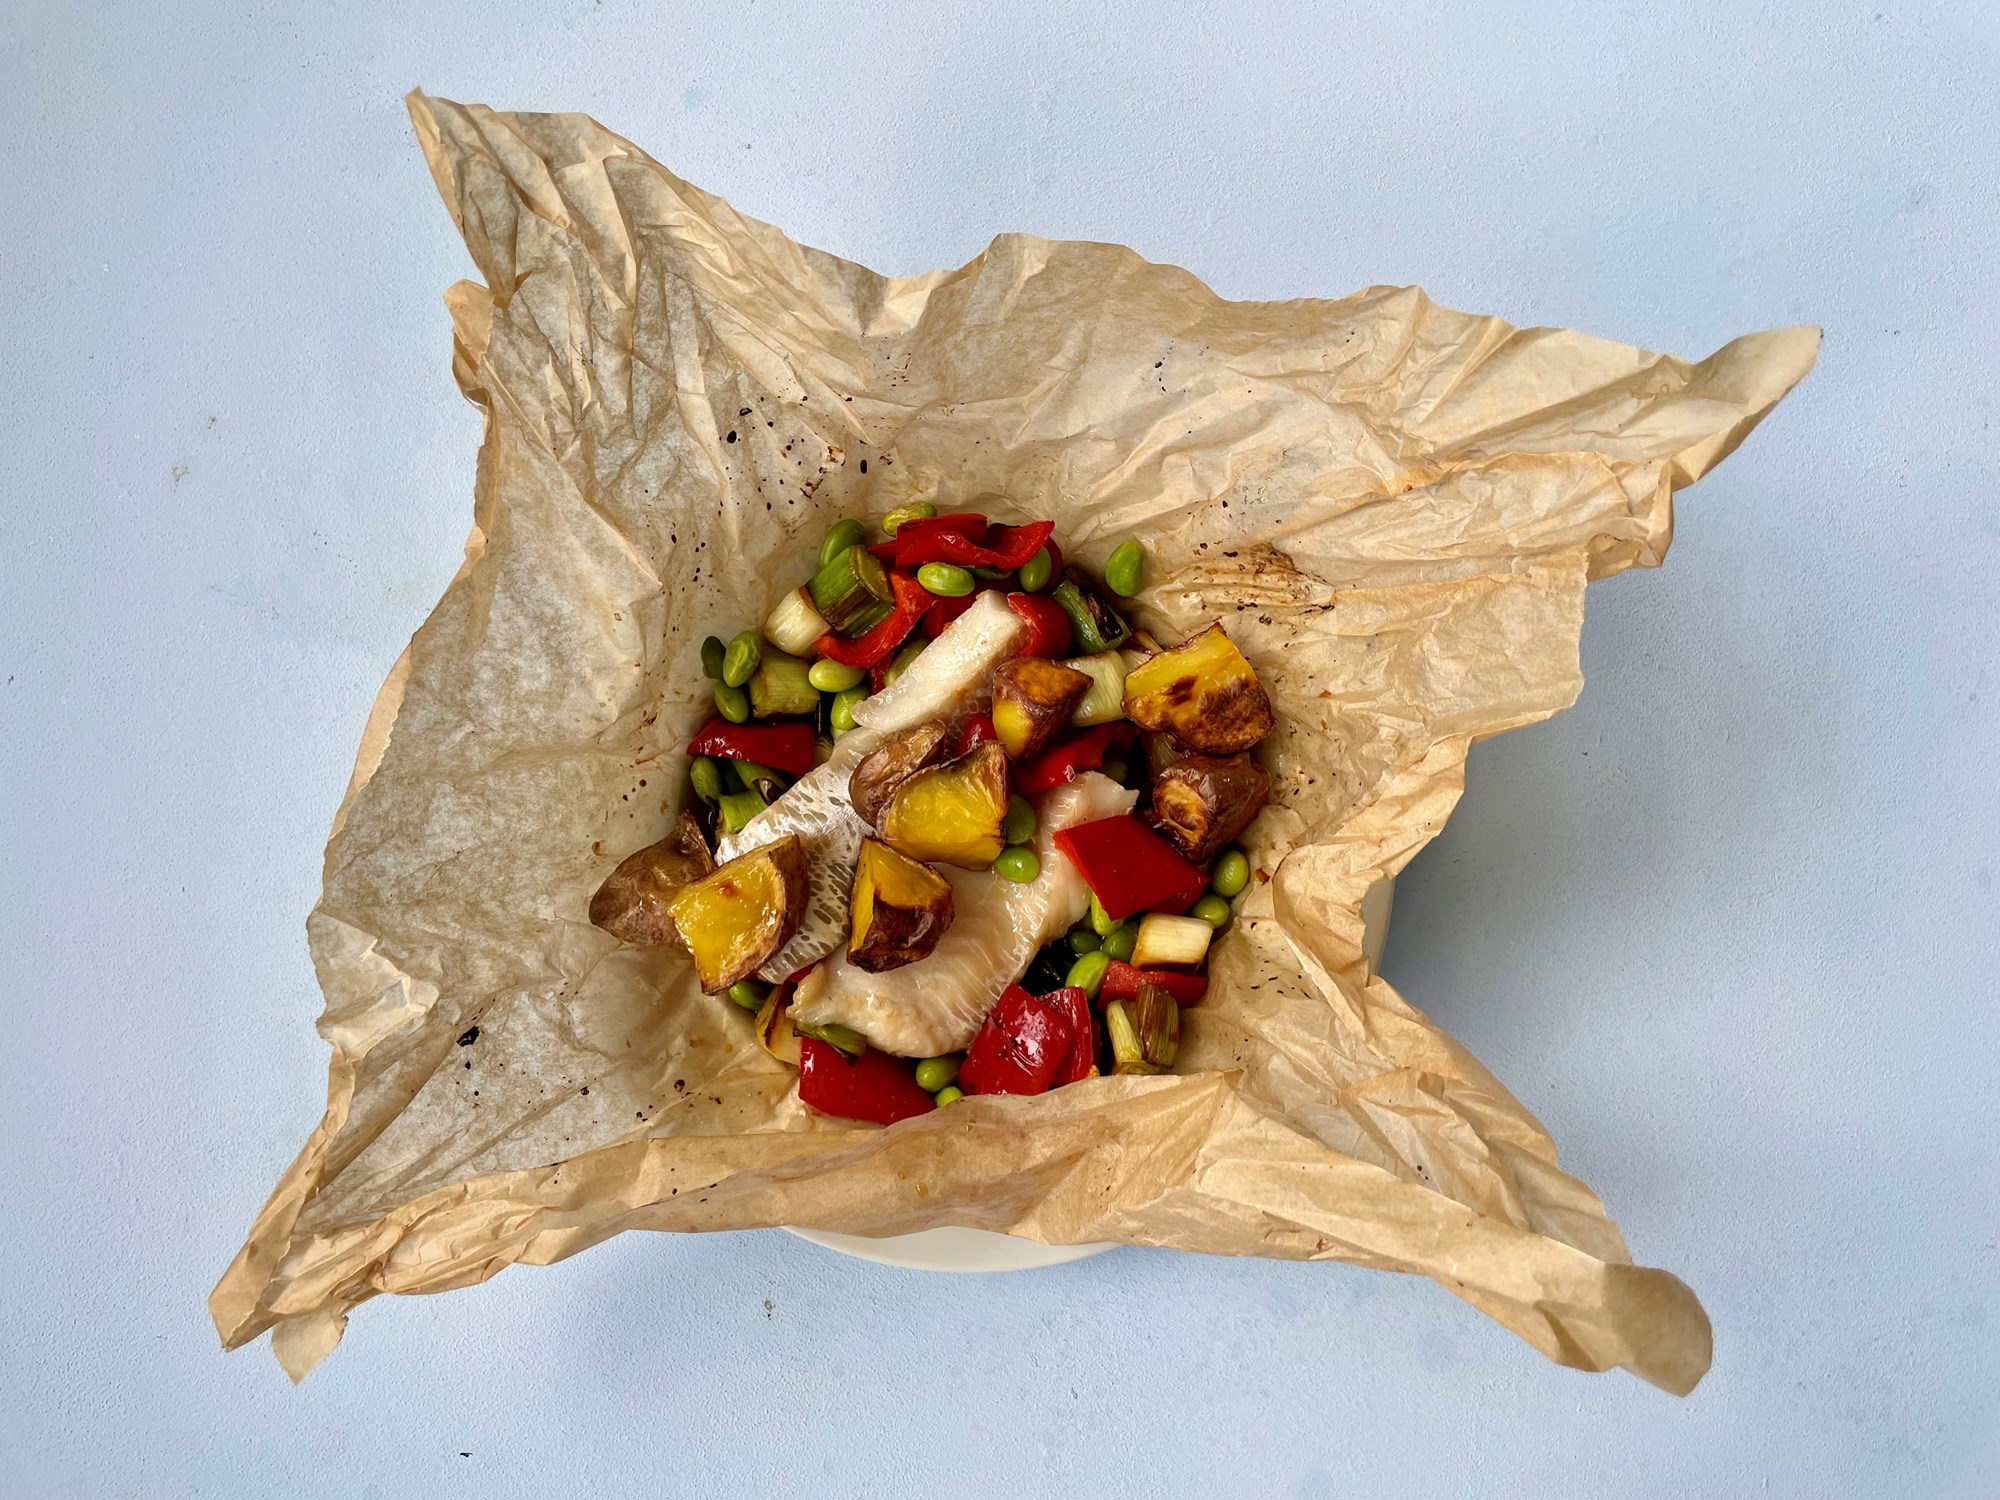 Kuller en papilotte med edemamebønner, rød peber og ingefær